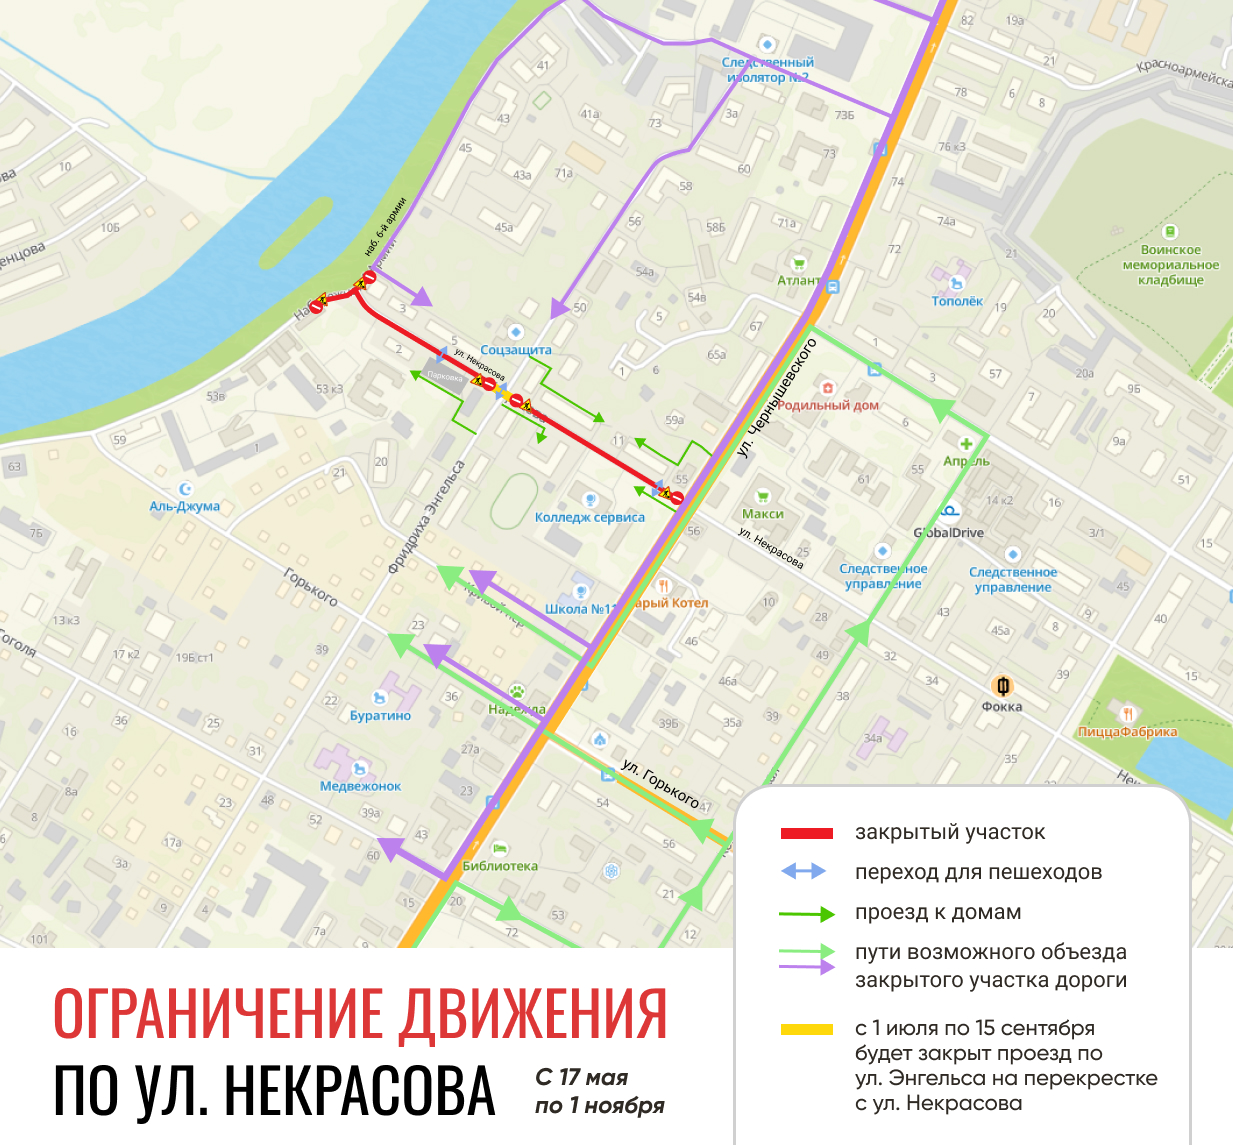 С сегодняшнего дня ограничено движение по улице Некрасова